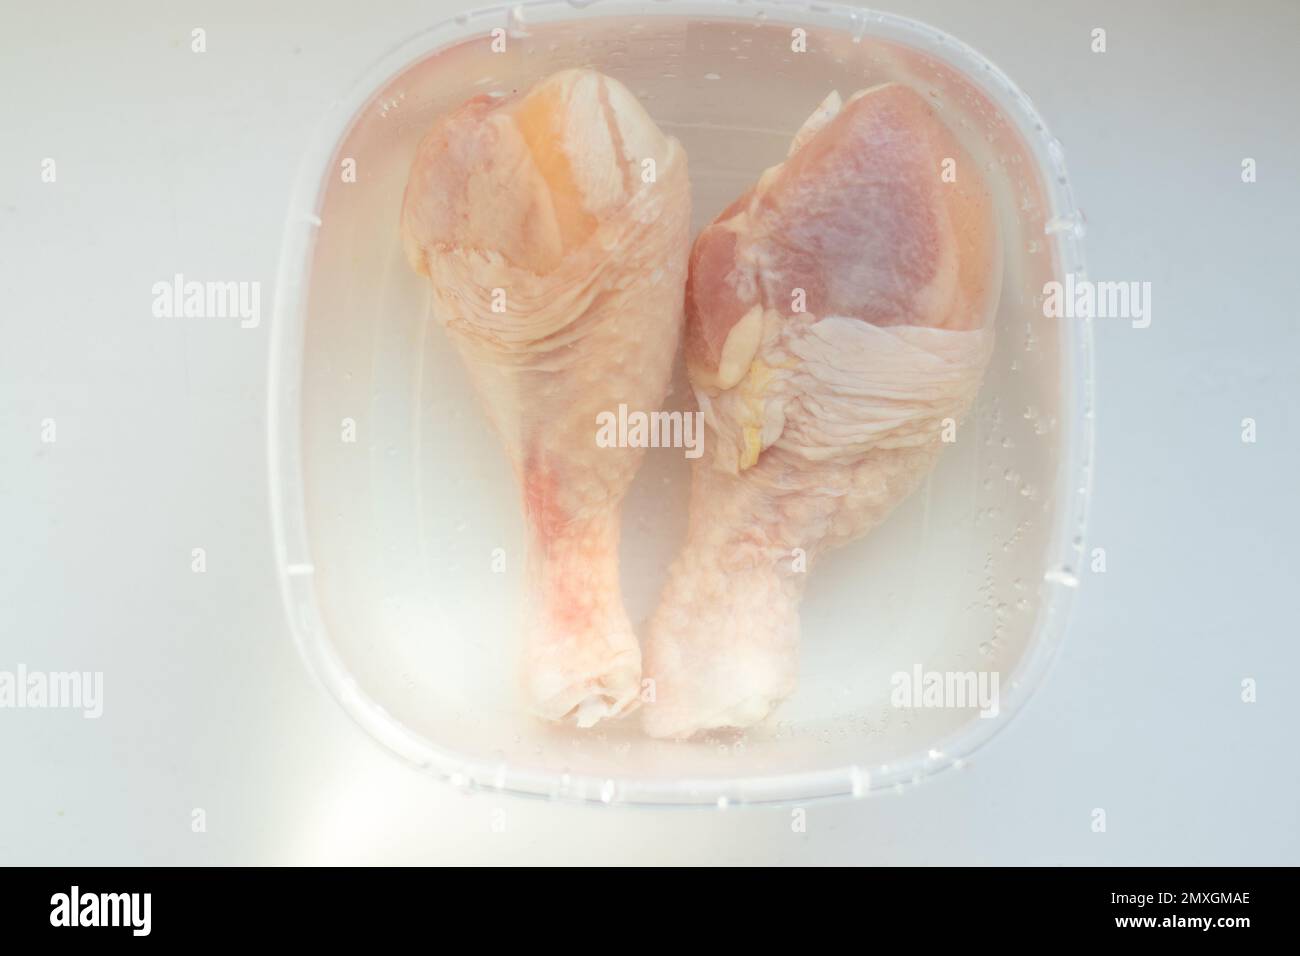 Scongelare il pollo immagini e fotografie stock ad alta risoluzione - Alamy